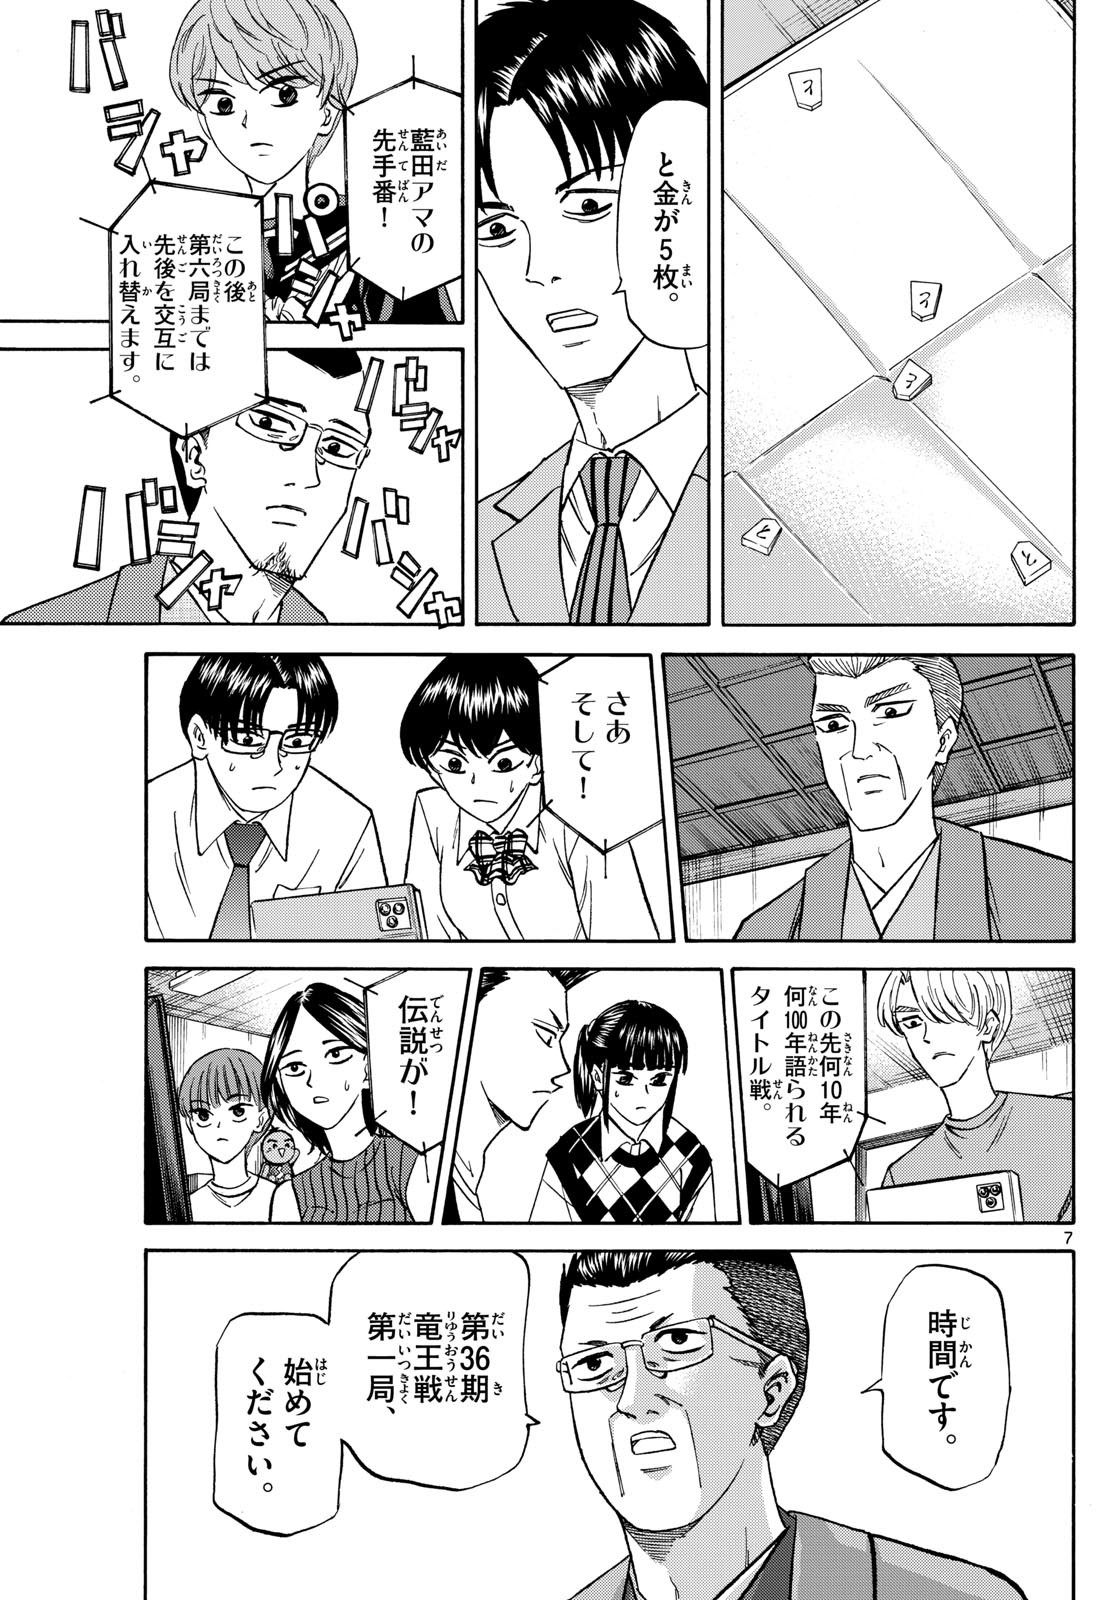 Ryu-to-Ichigo - Chapter 154 - Page 7